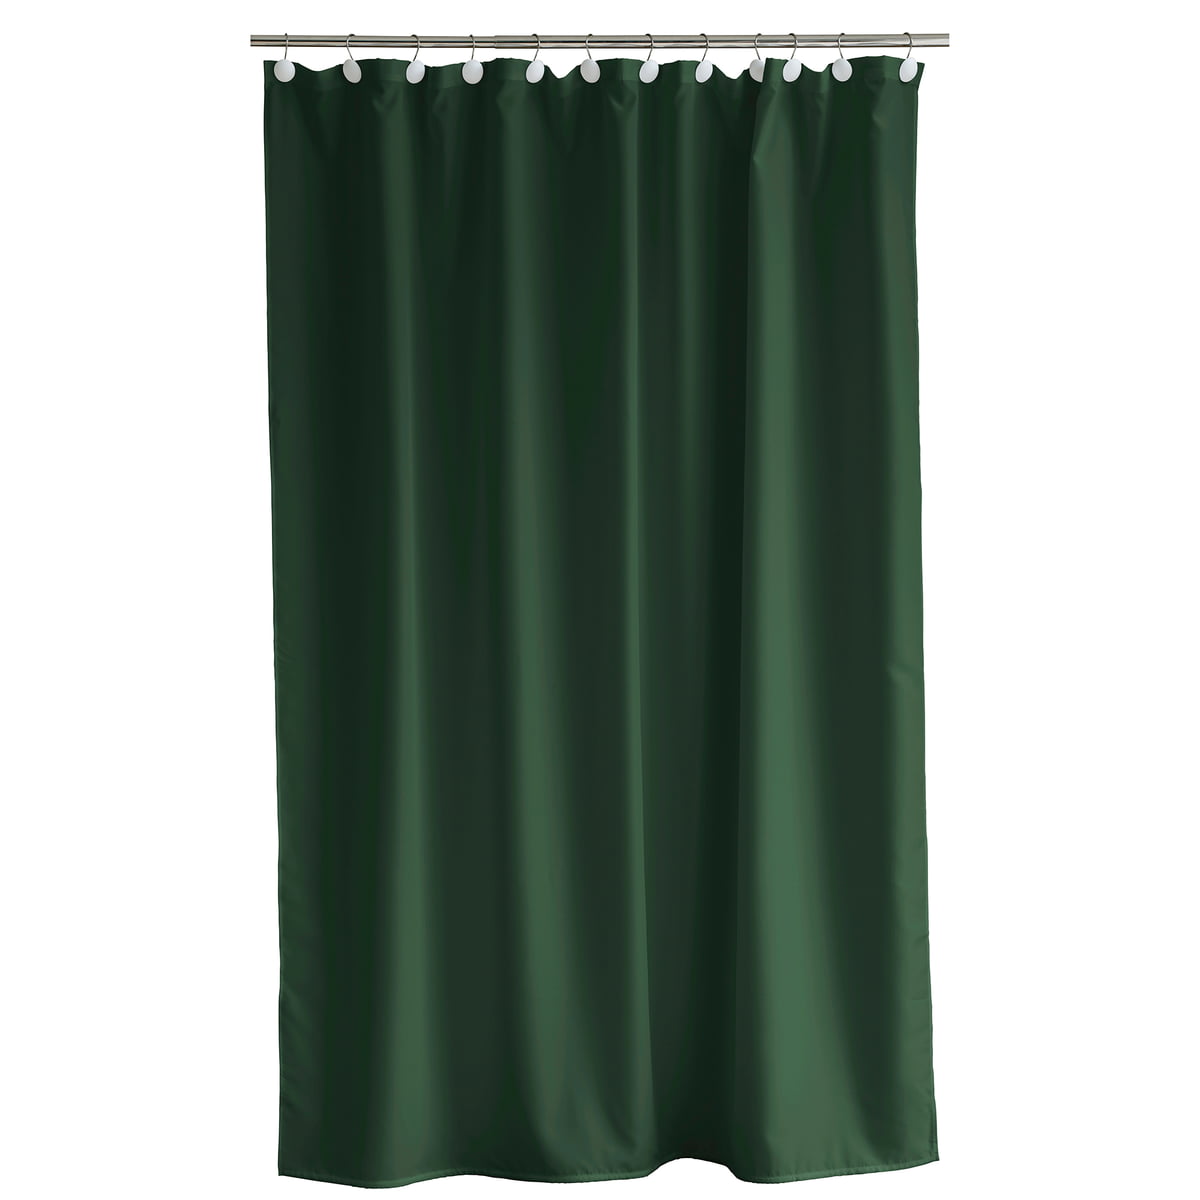 södahl - comfort rideau de douche, 180 x 220 cm, pine green